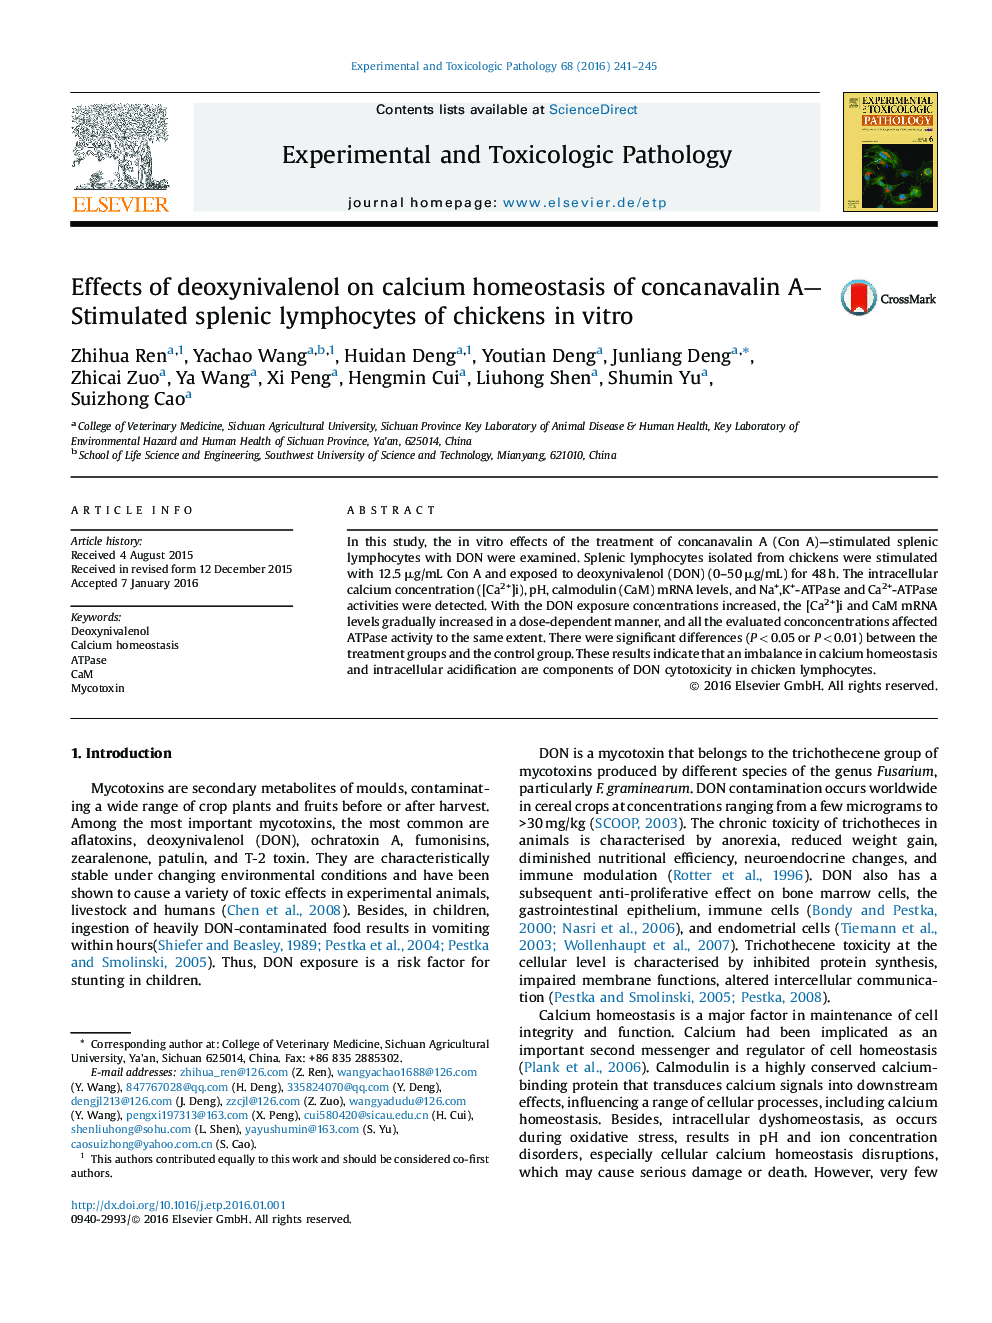 اثرات deoxinivalenol بر روی هوموستاز کلسیم کونکاناوالین؛ لنفوسیت های طحالی تحریک شده در جوجه ها در شرایط آزمایشگاهی